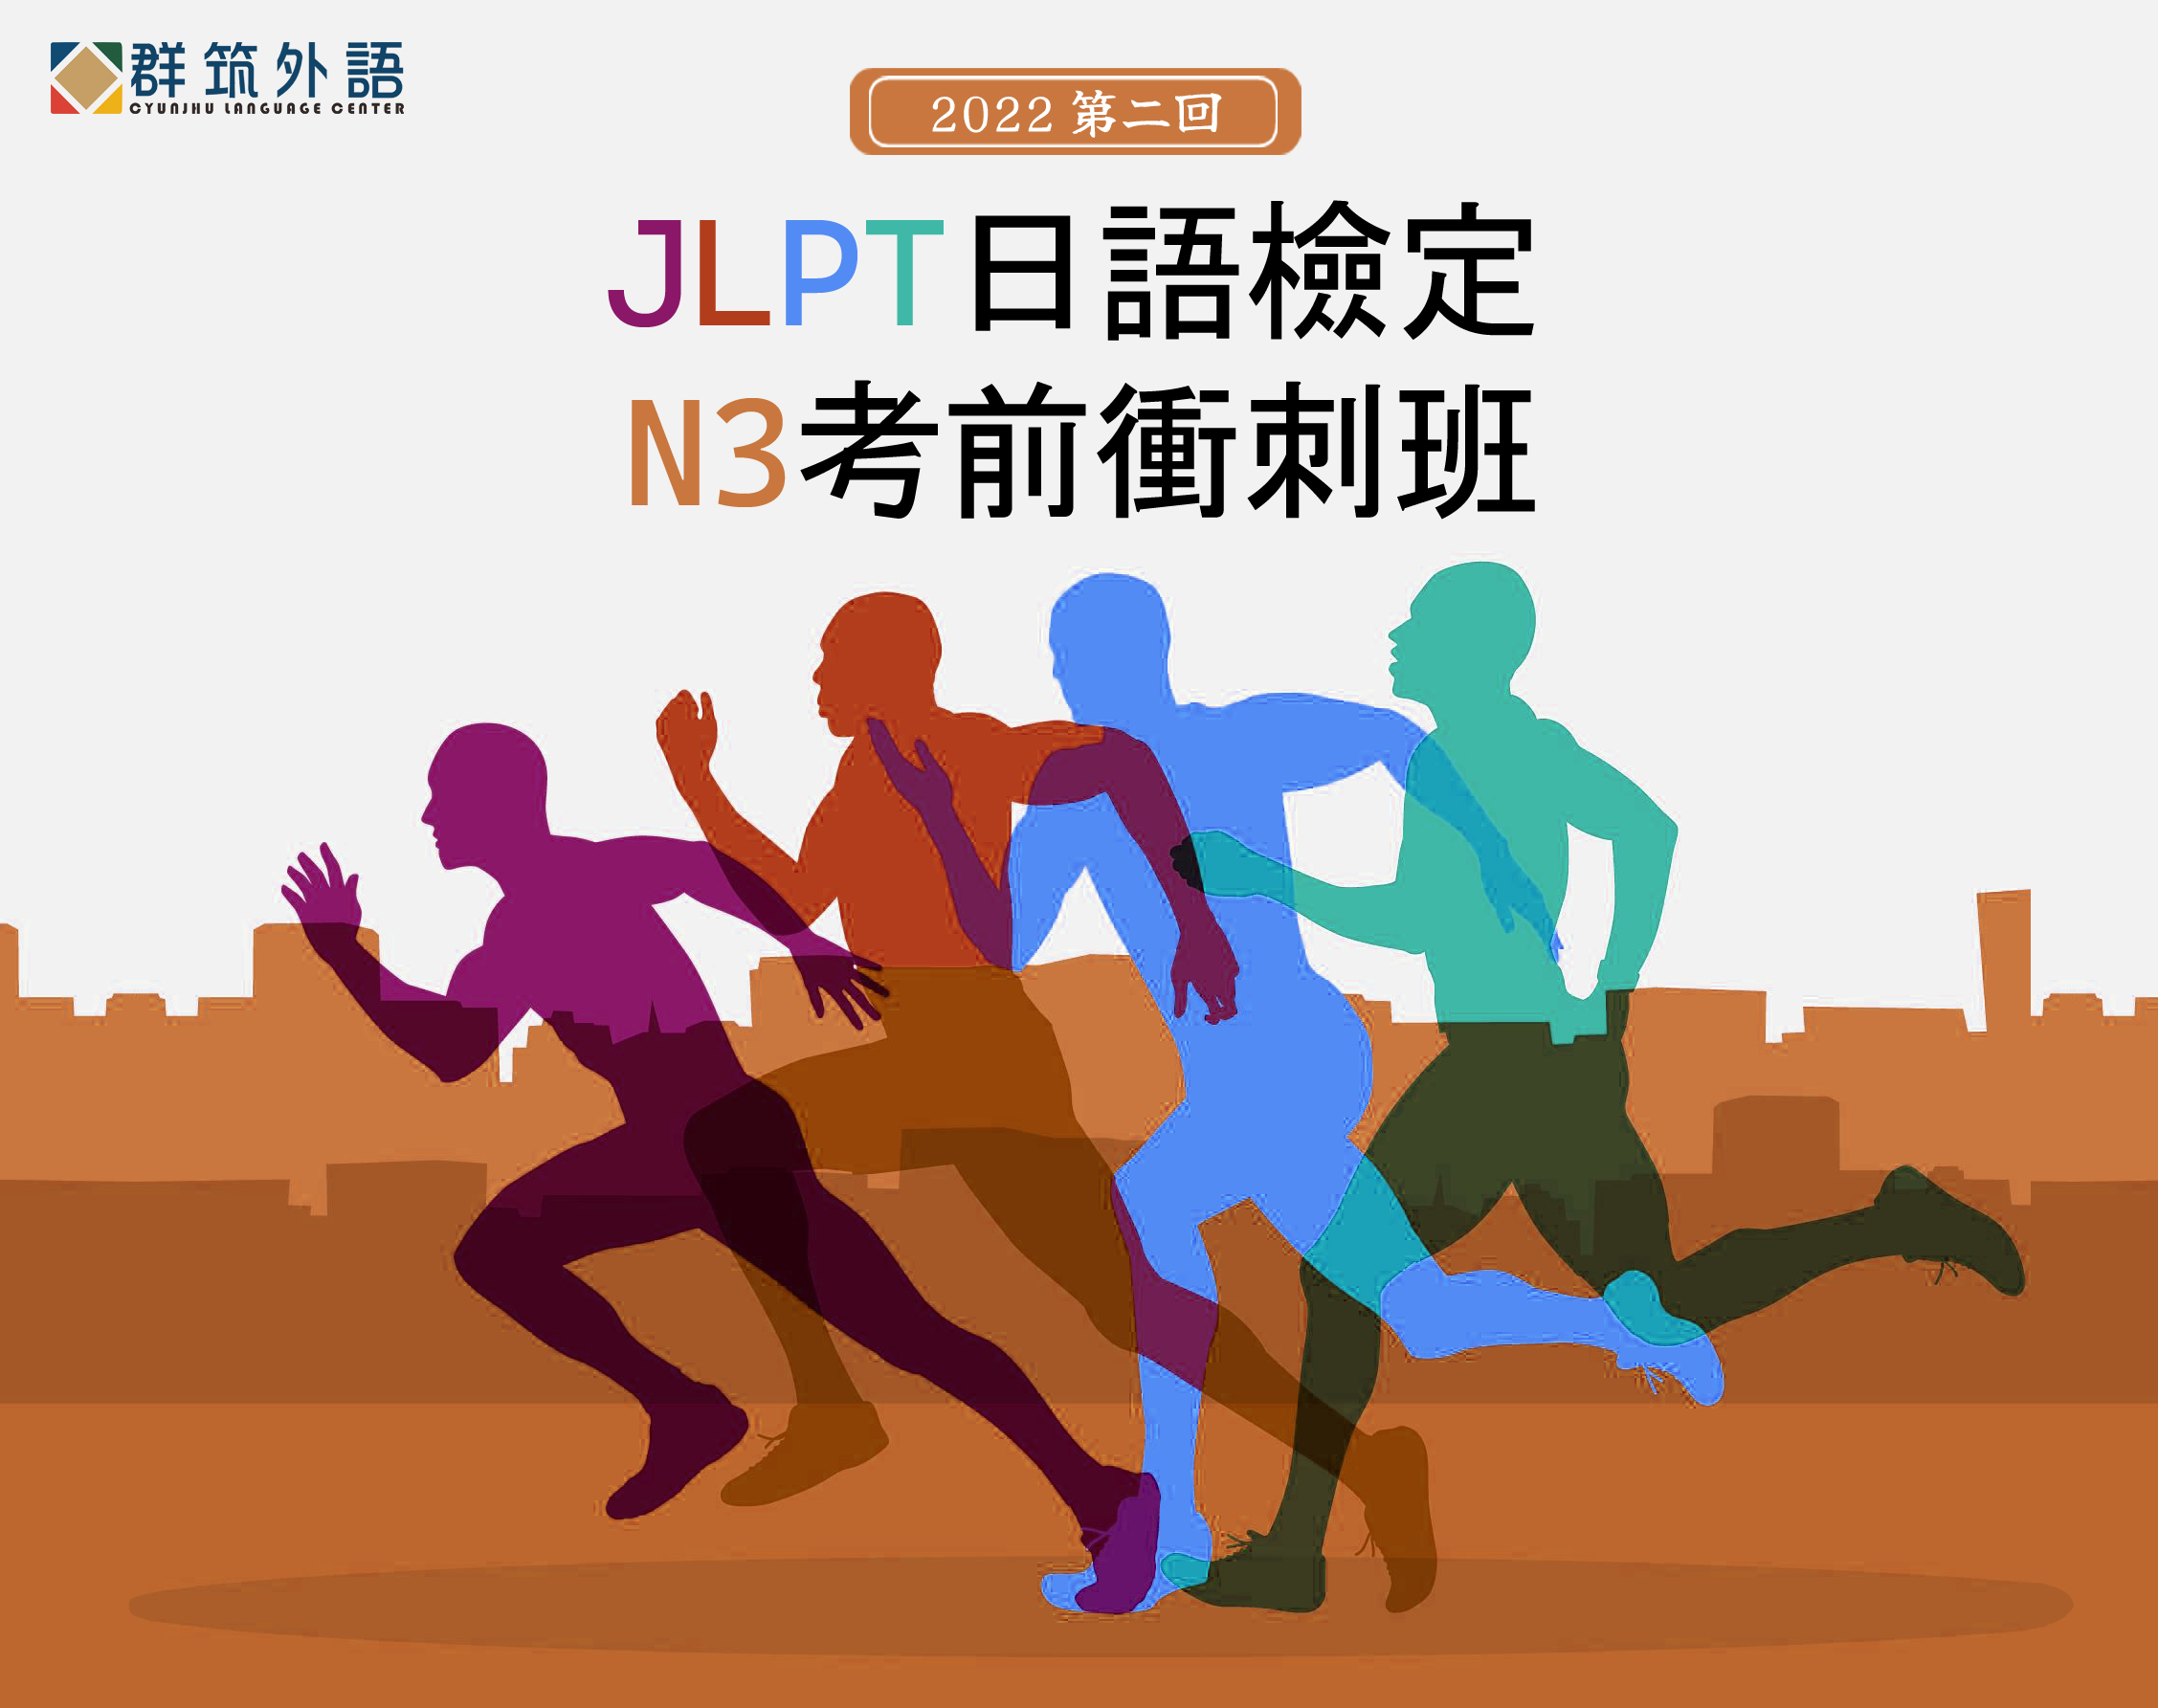 JLPT日語檢定 N3考前衝刺班